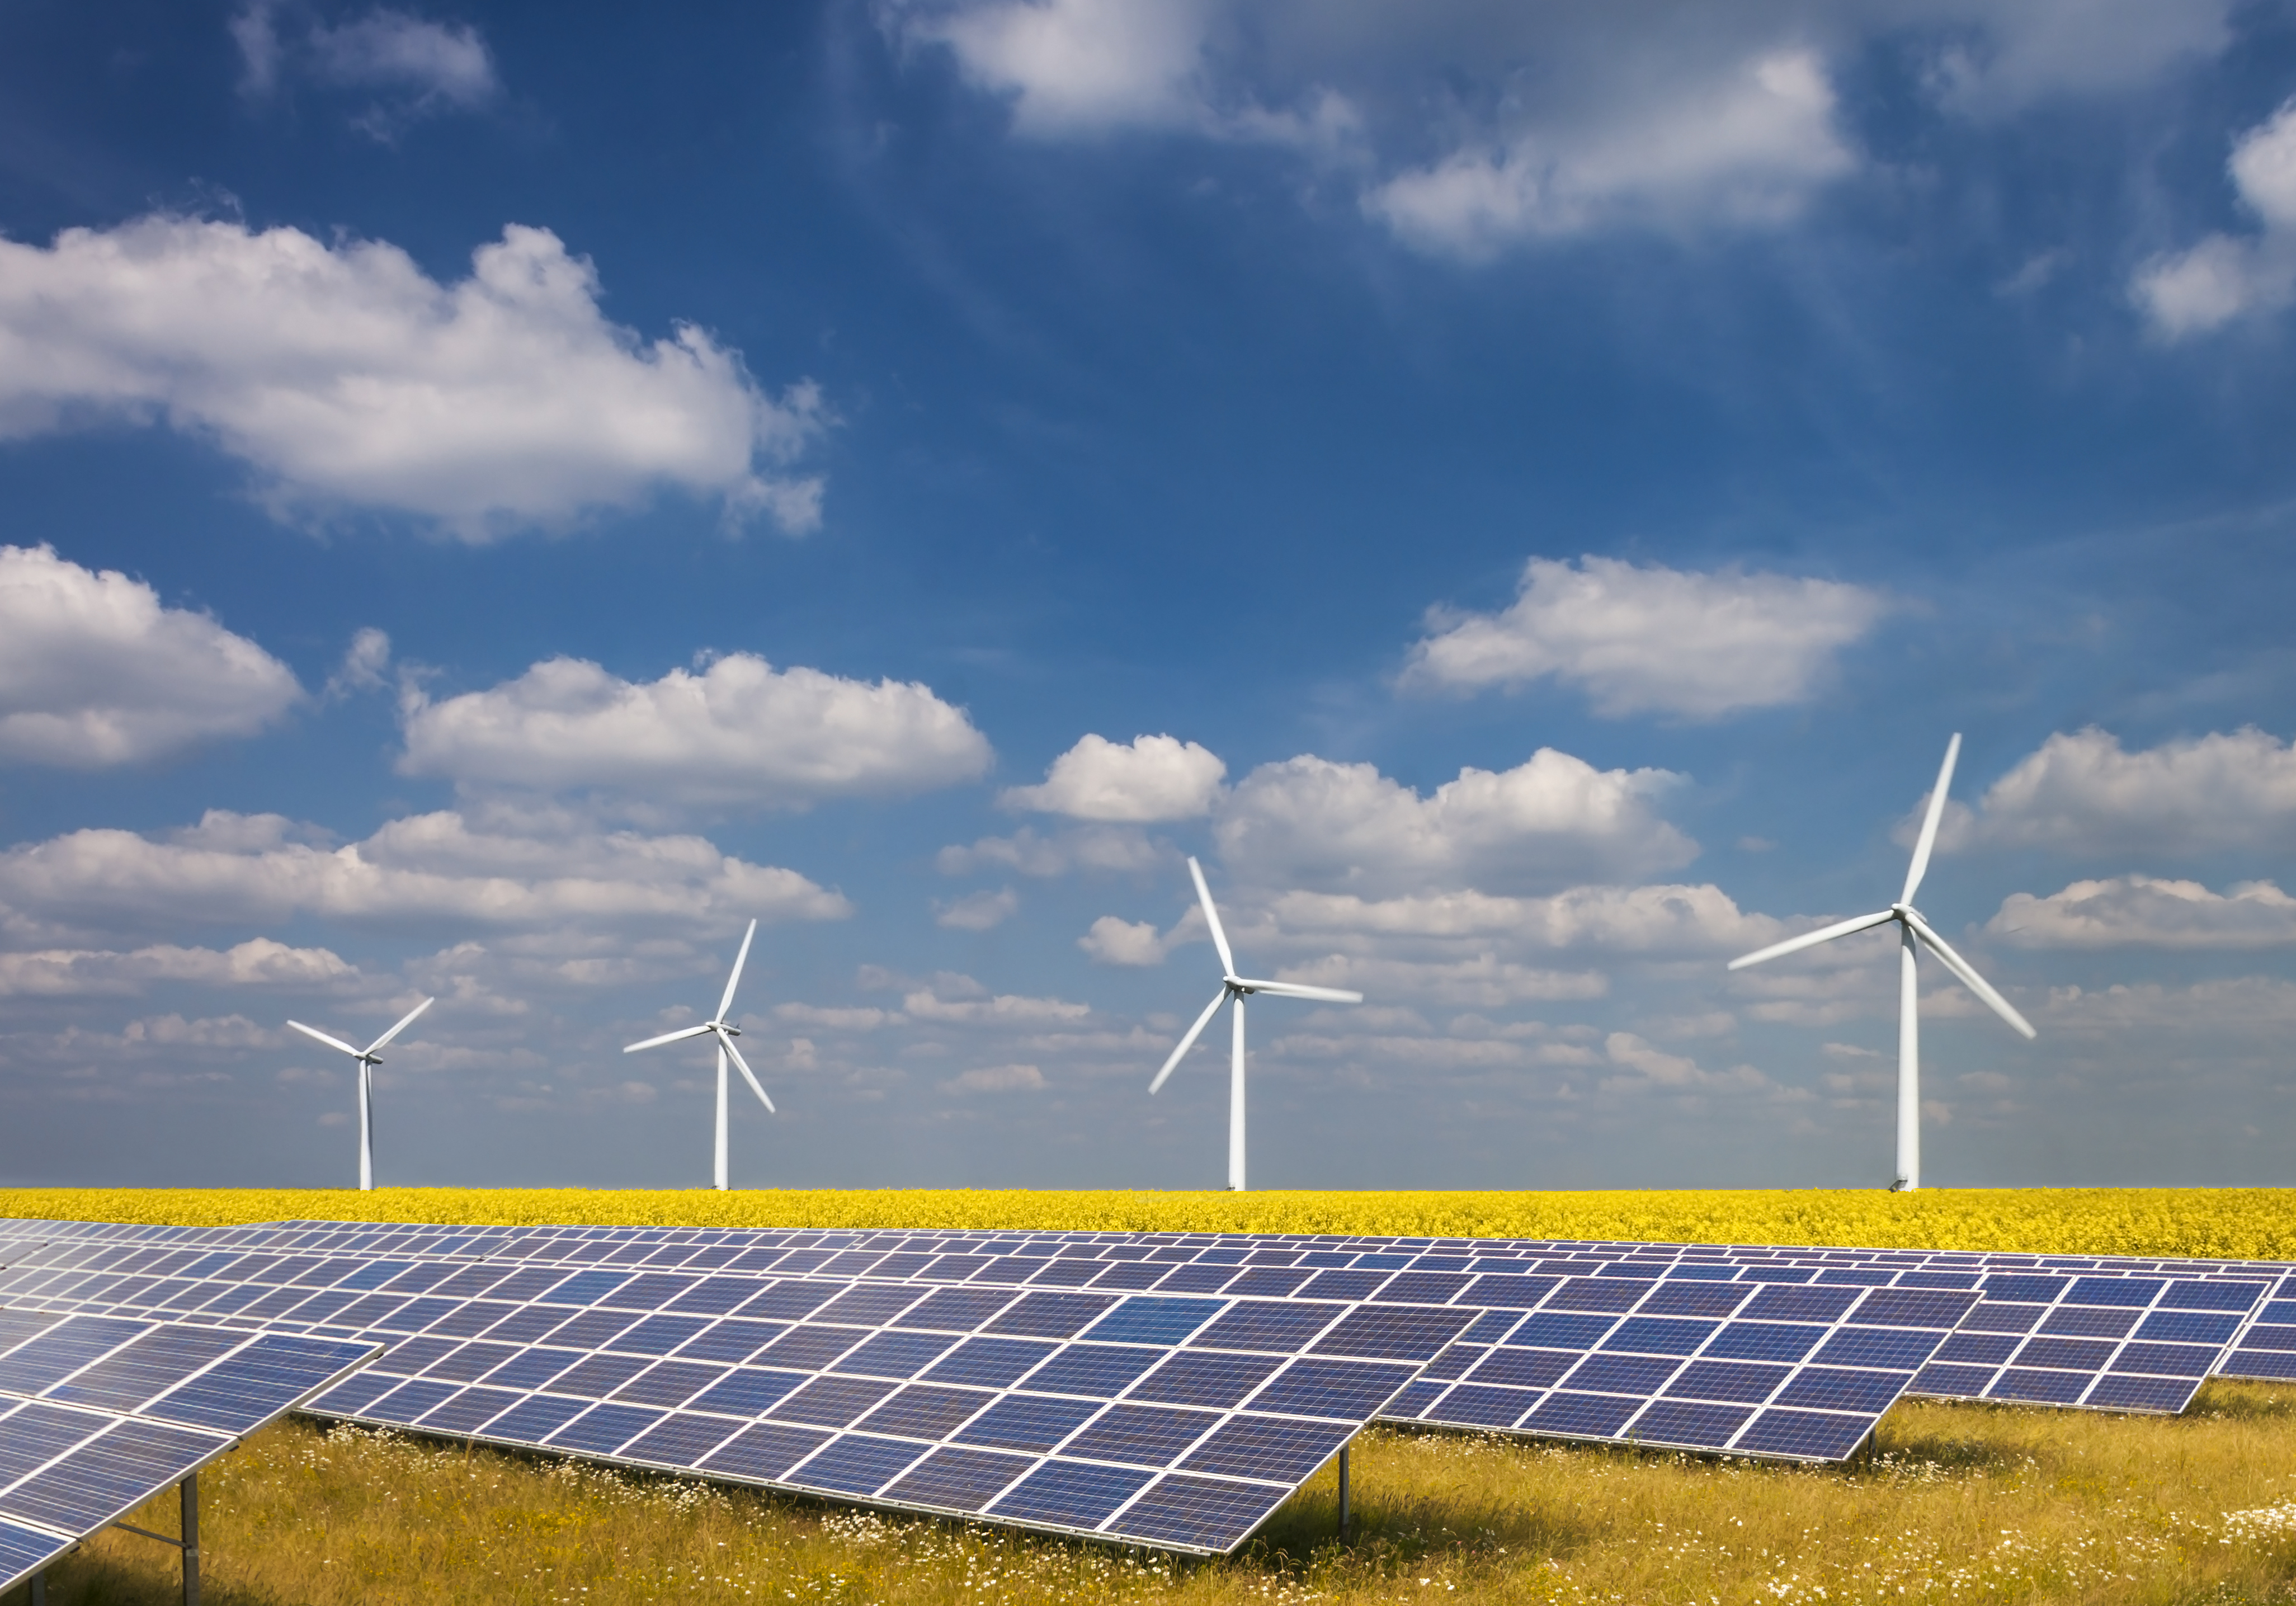 Атомные электростанции использующие альтернативные источники энергии. Возобновляемые источники энергии (ВИЭ). Возобновляемые источники энергии Солнечная энергия. ВИЭ ветрогенератор. Ветро солнечные гибридные электростанции.